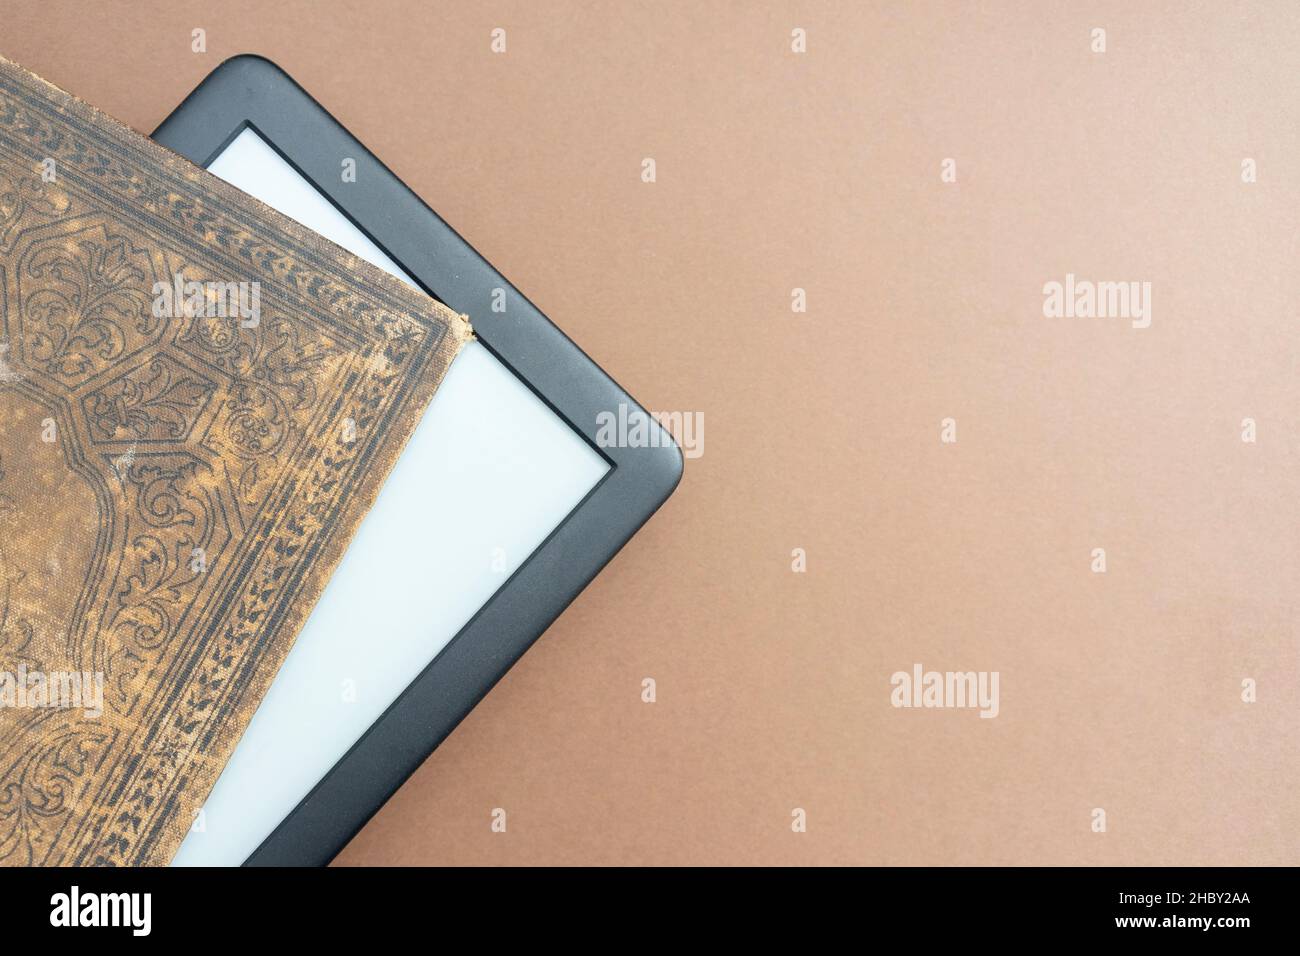 E-Reader, der aus einem sehr alten Buch mit schönen Einbände hervorgegangen ist Stockfoto